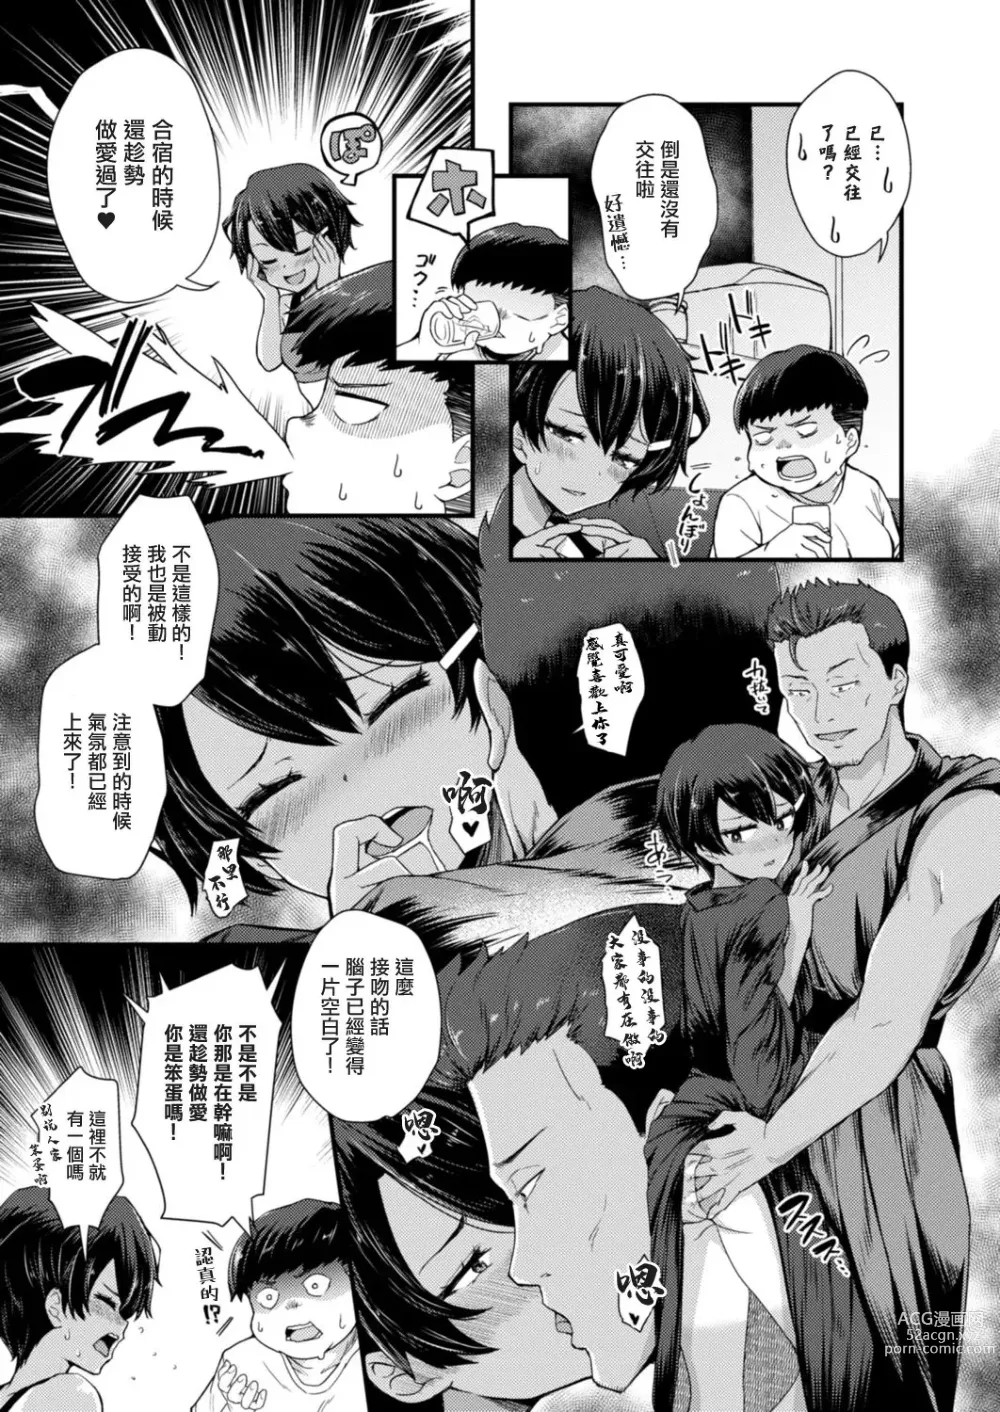 Page 5 of manga Gendai Shikiyoku Yotogibanashi Dainiya Kame wa Usagi ni Makerarenai